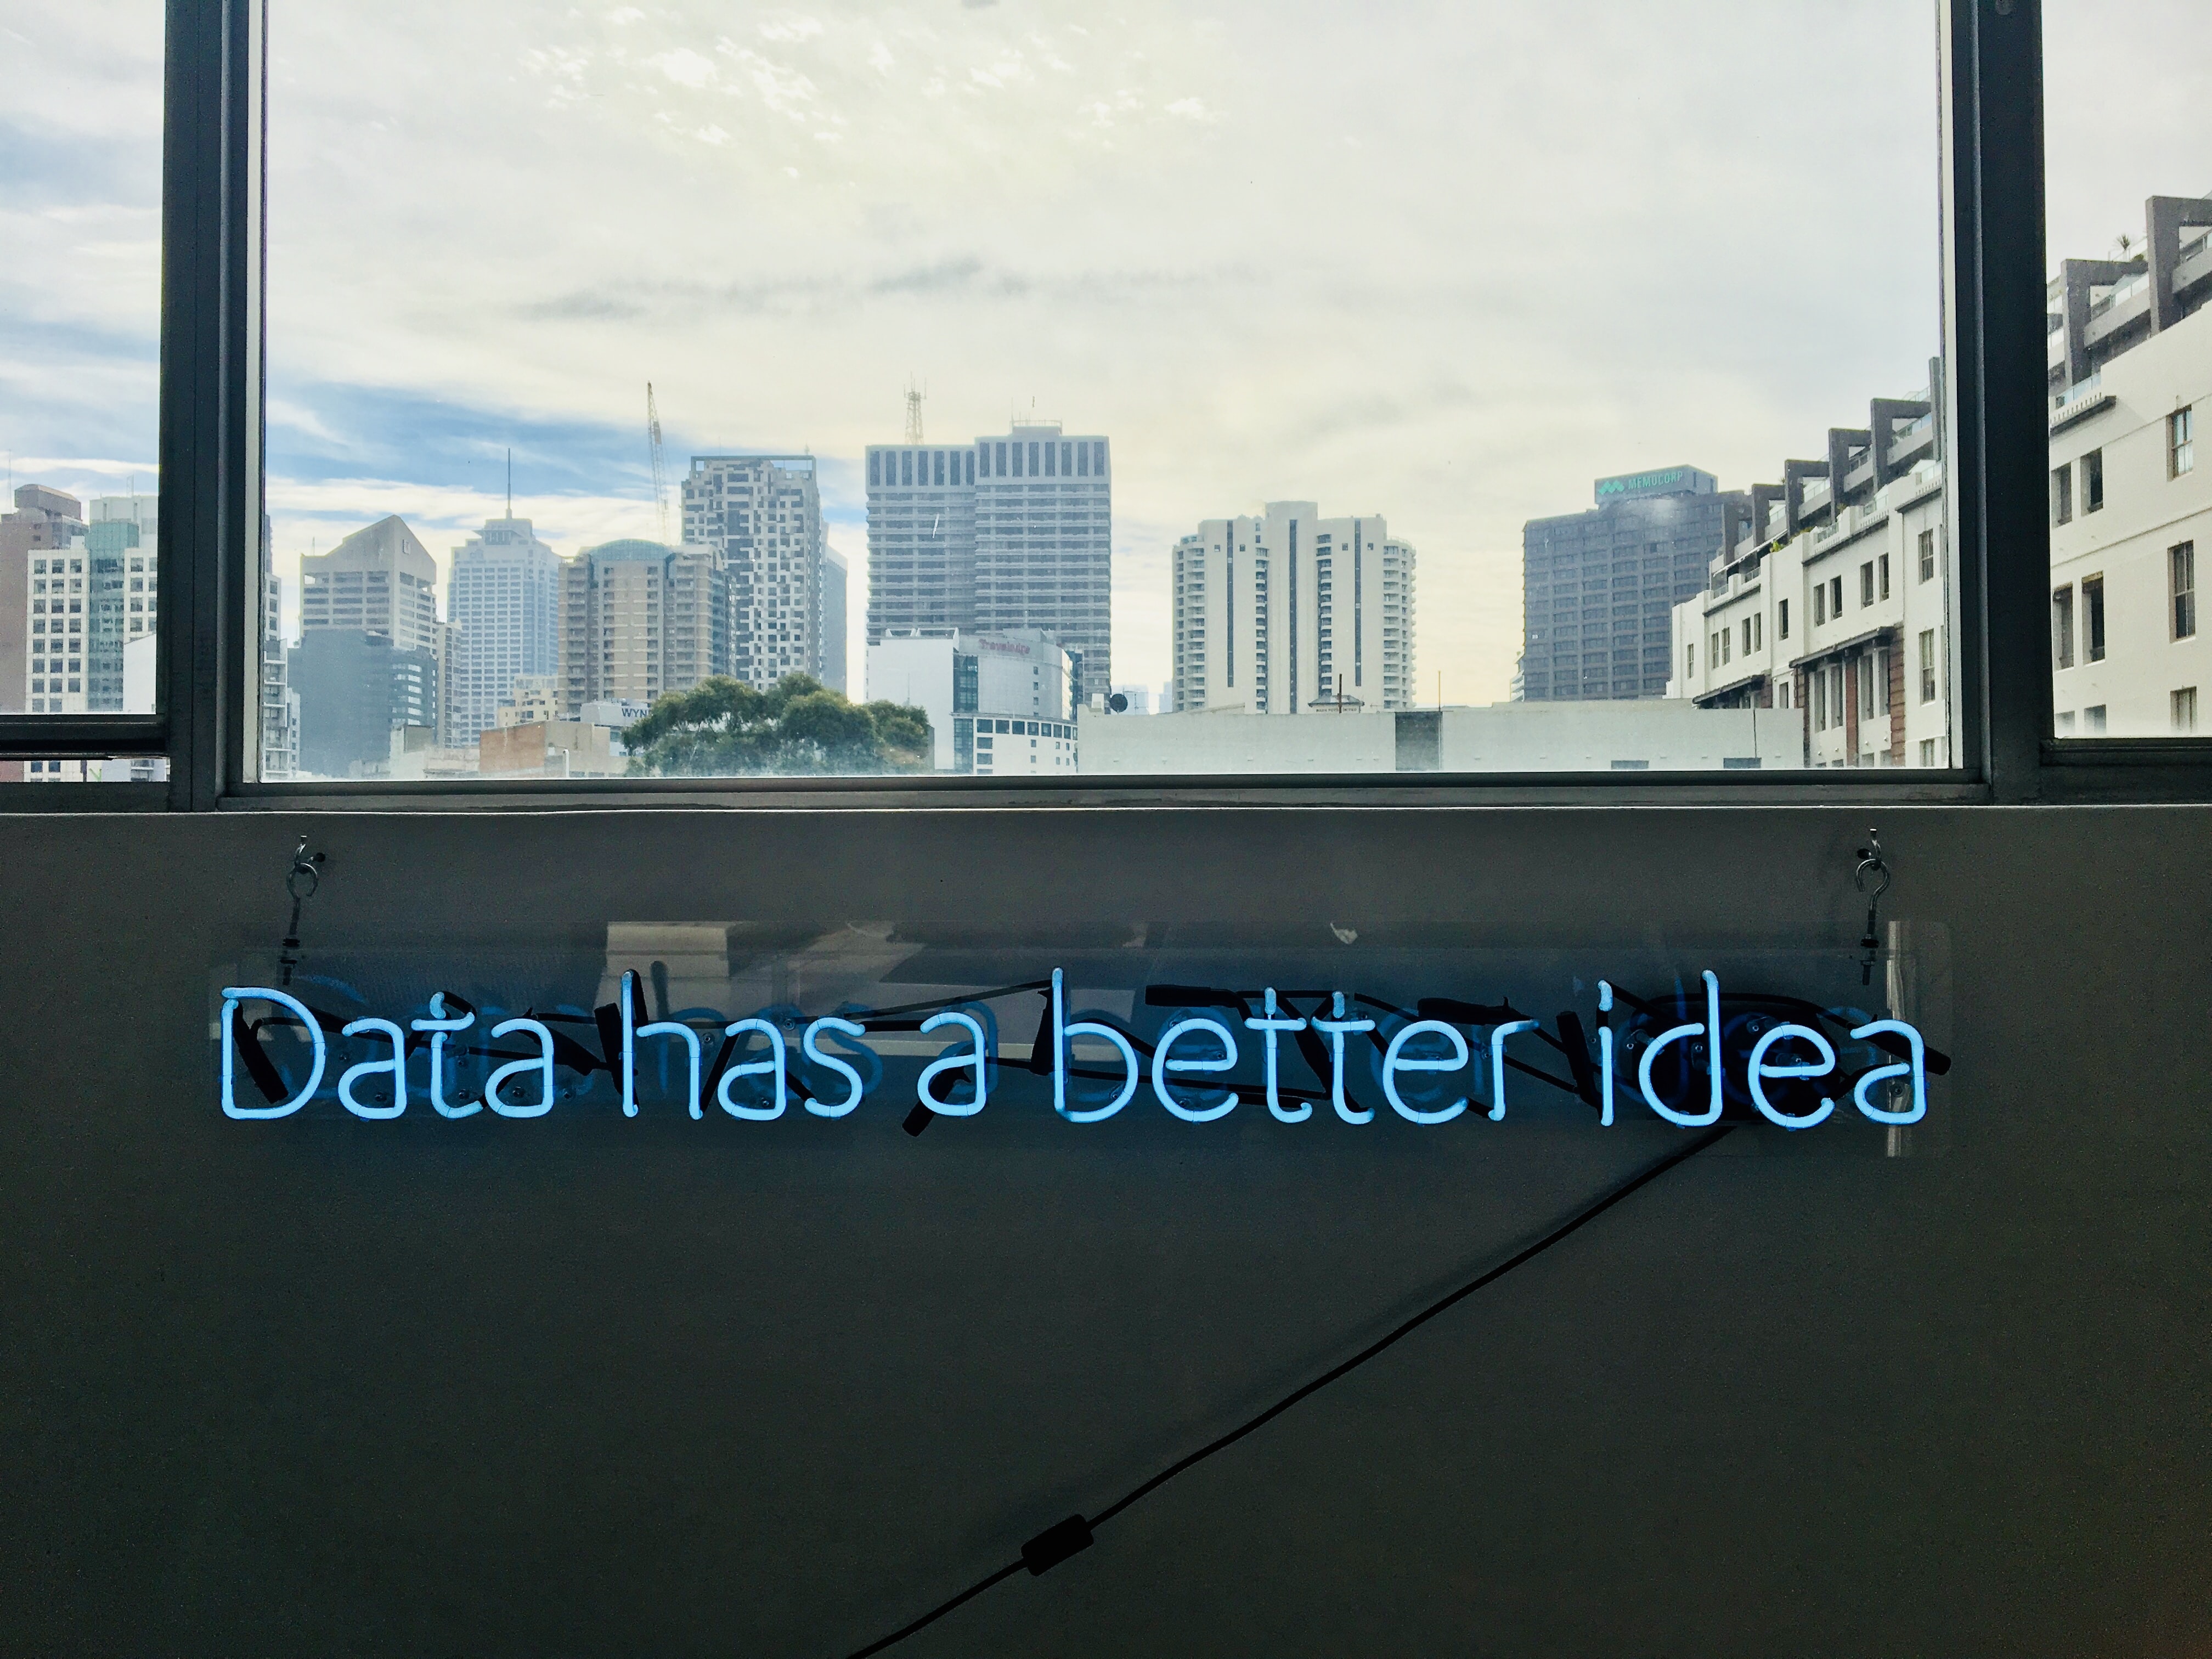 Data has a better idea neon sign